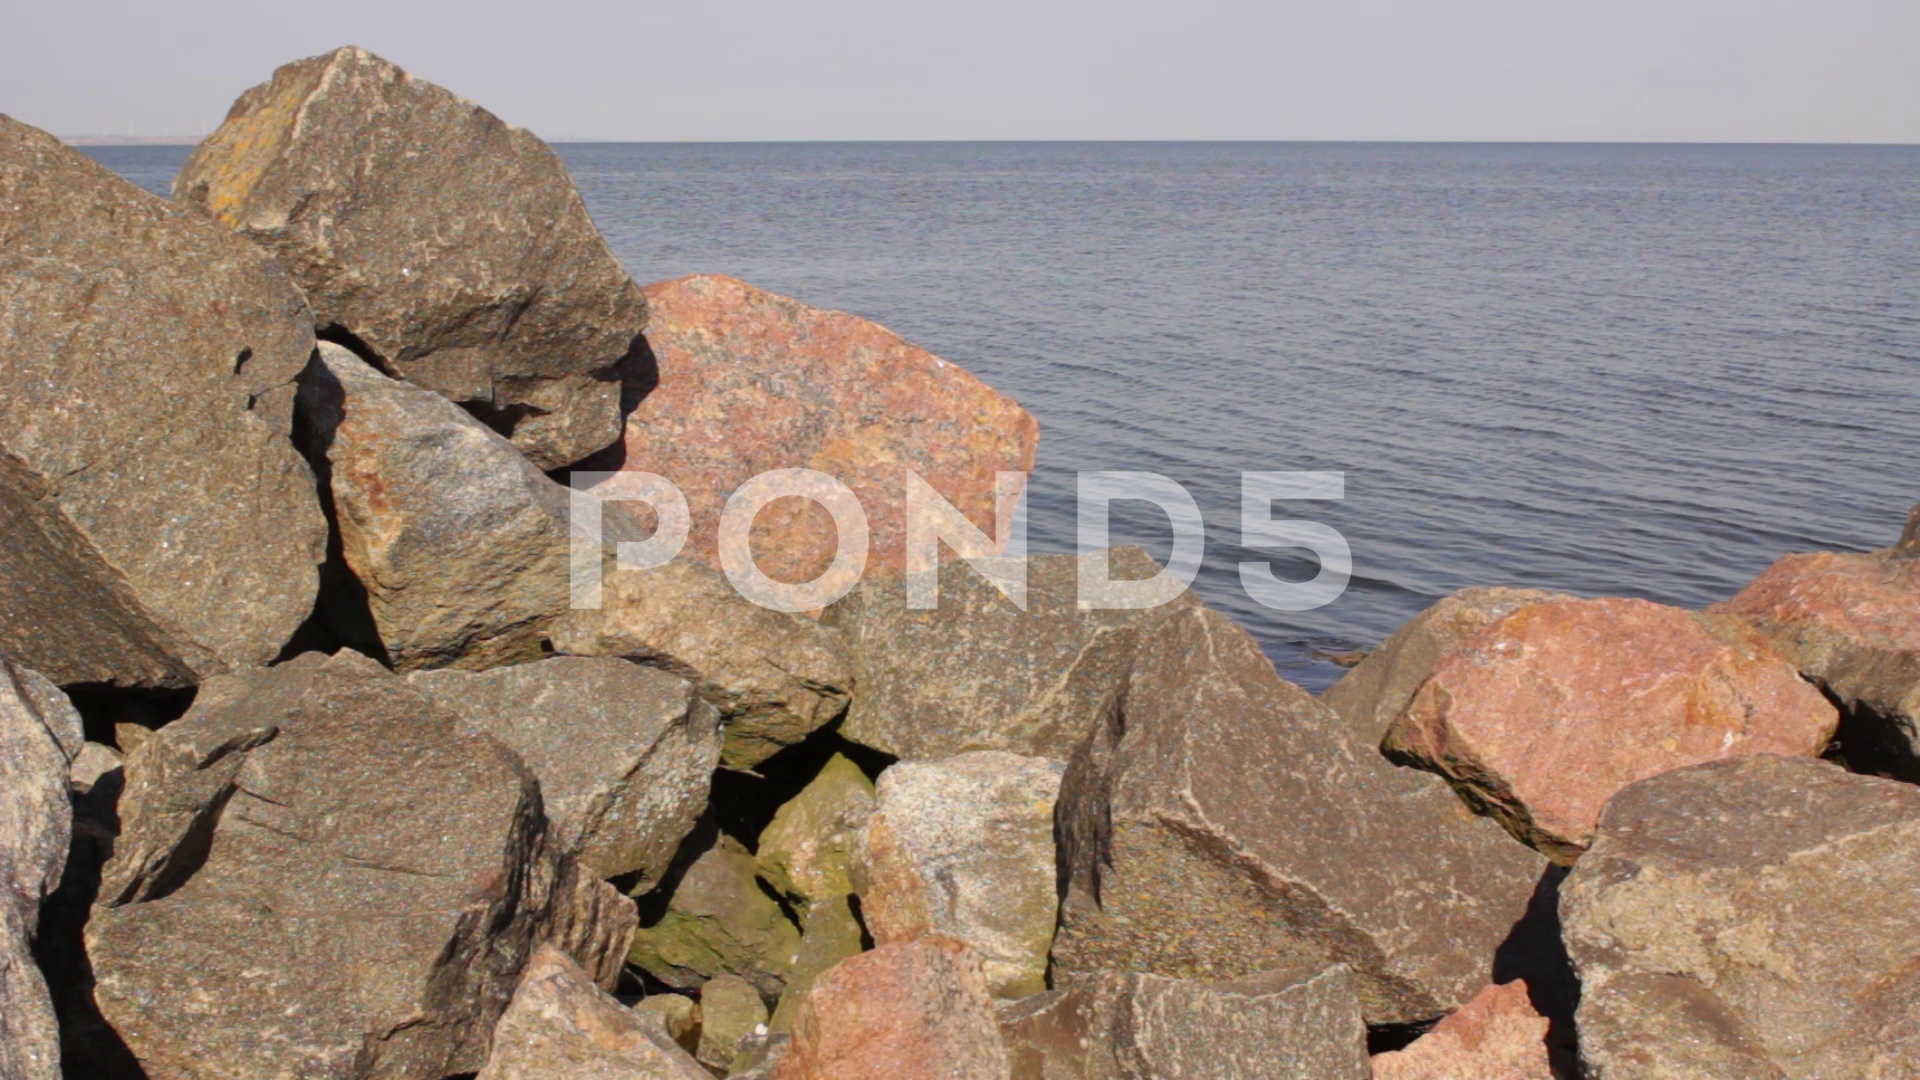 Brown stones on seaside ~ HD & 4K Stock Footage #71218888